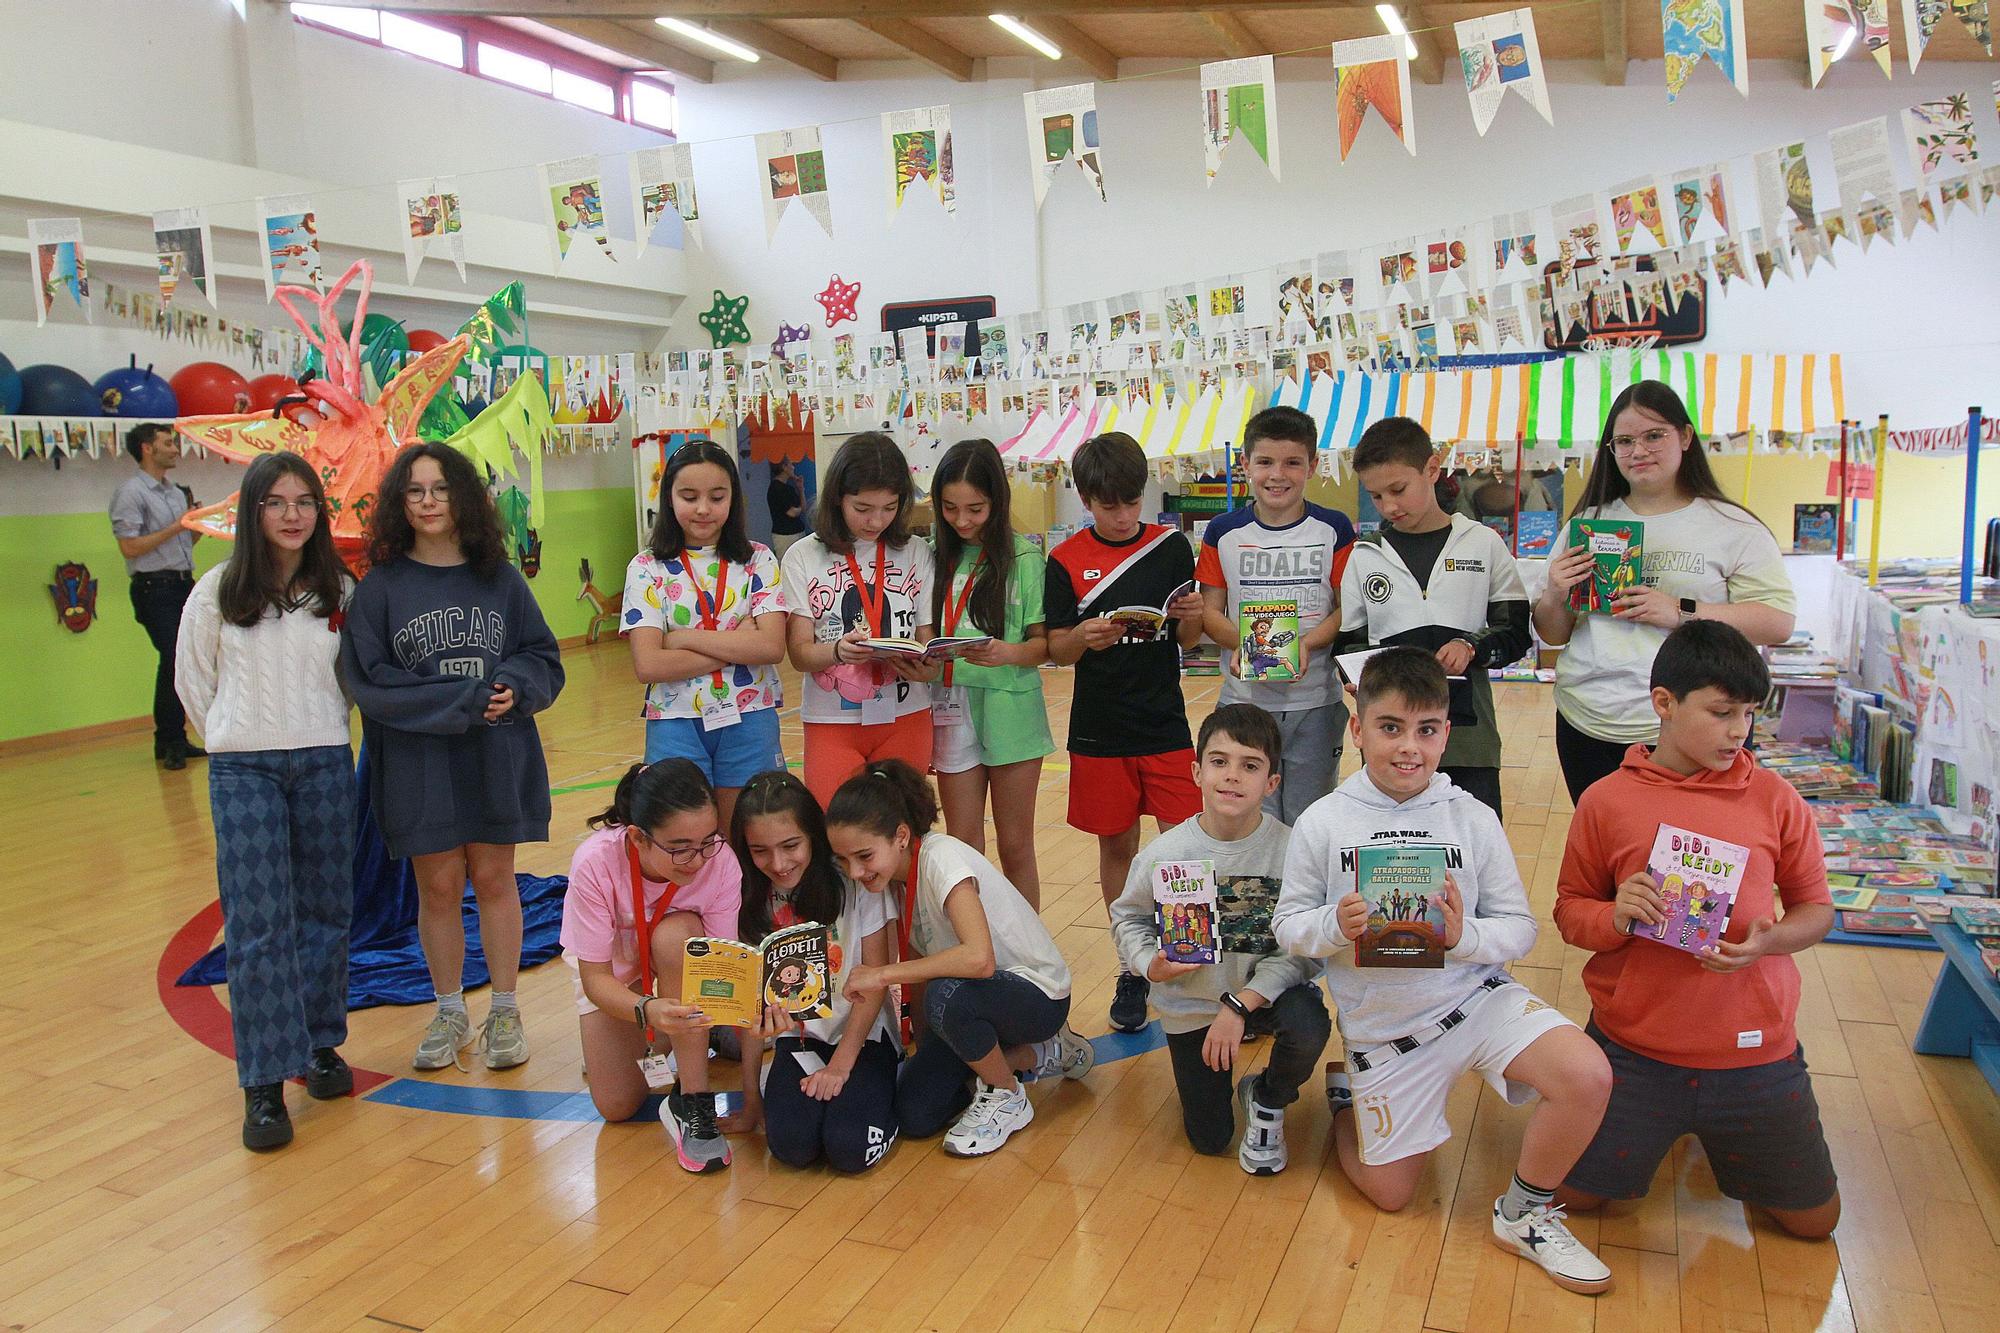 Libros para fomentar la lectura en los niños - La Opinión de A Coruña